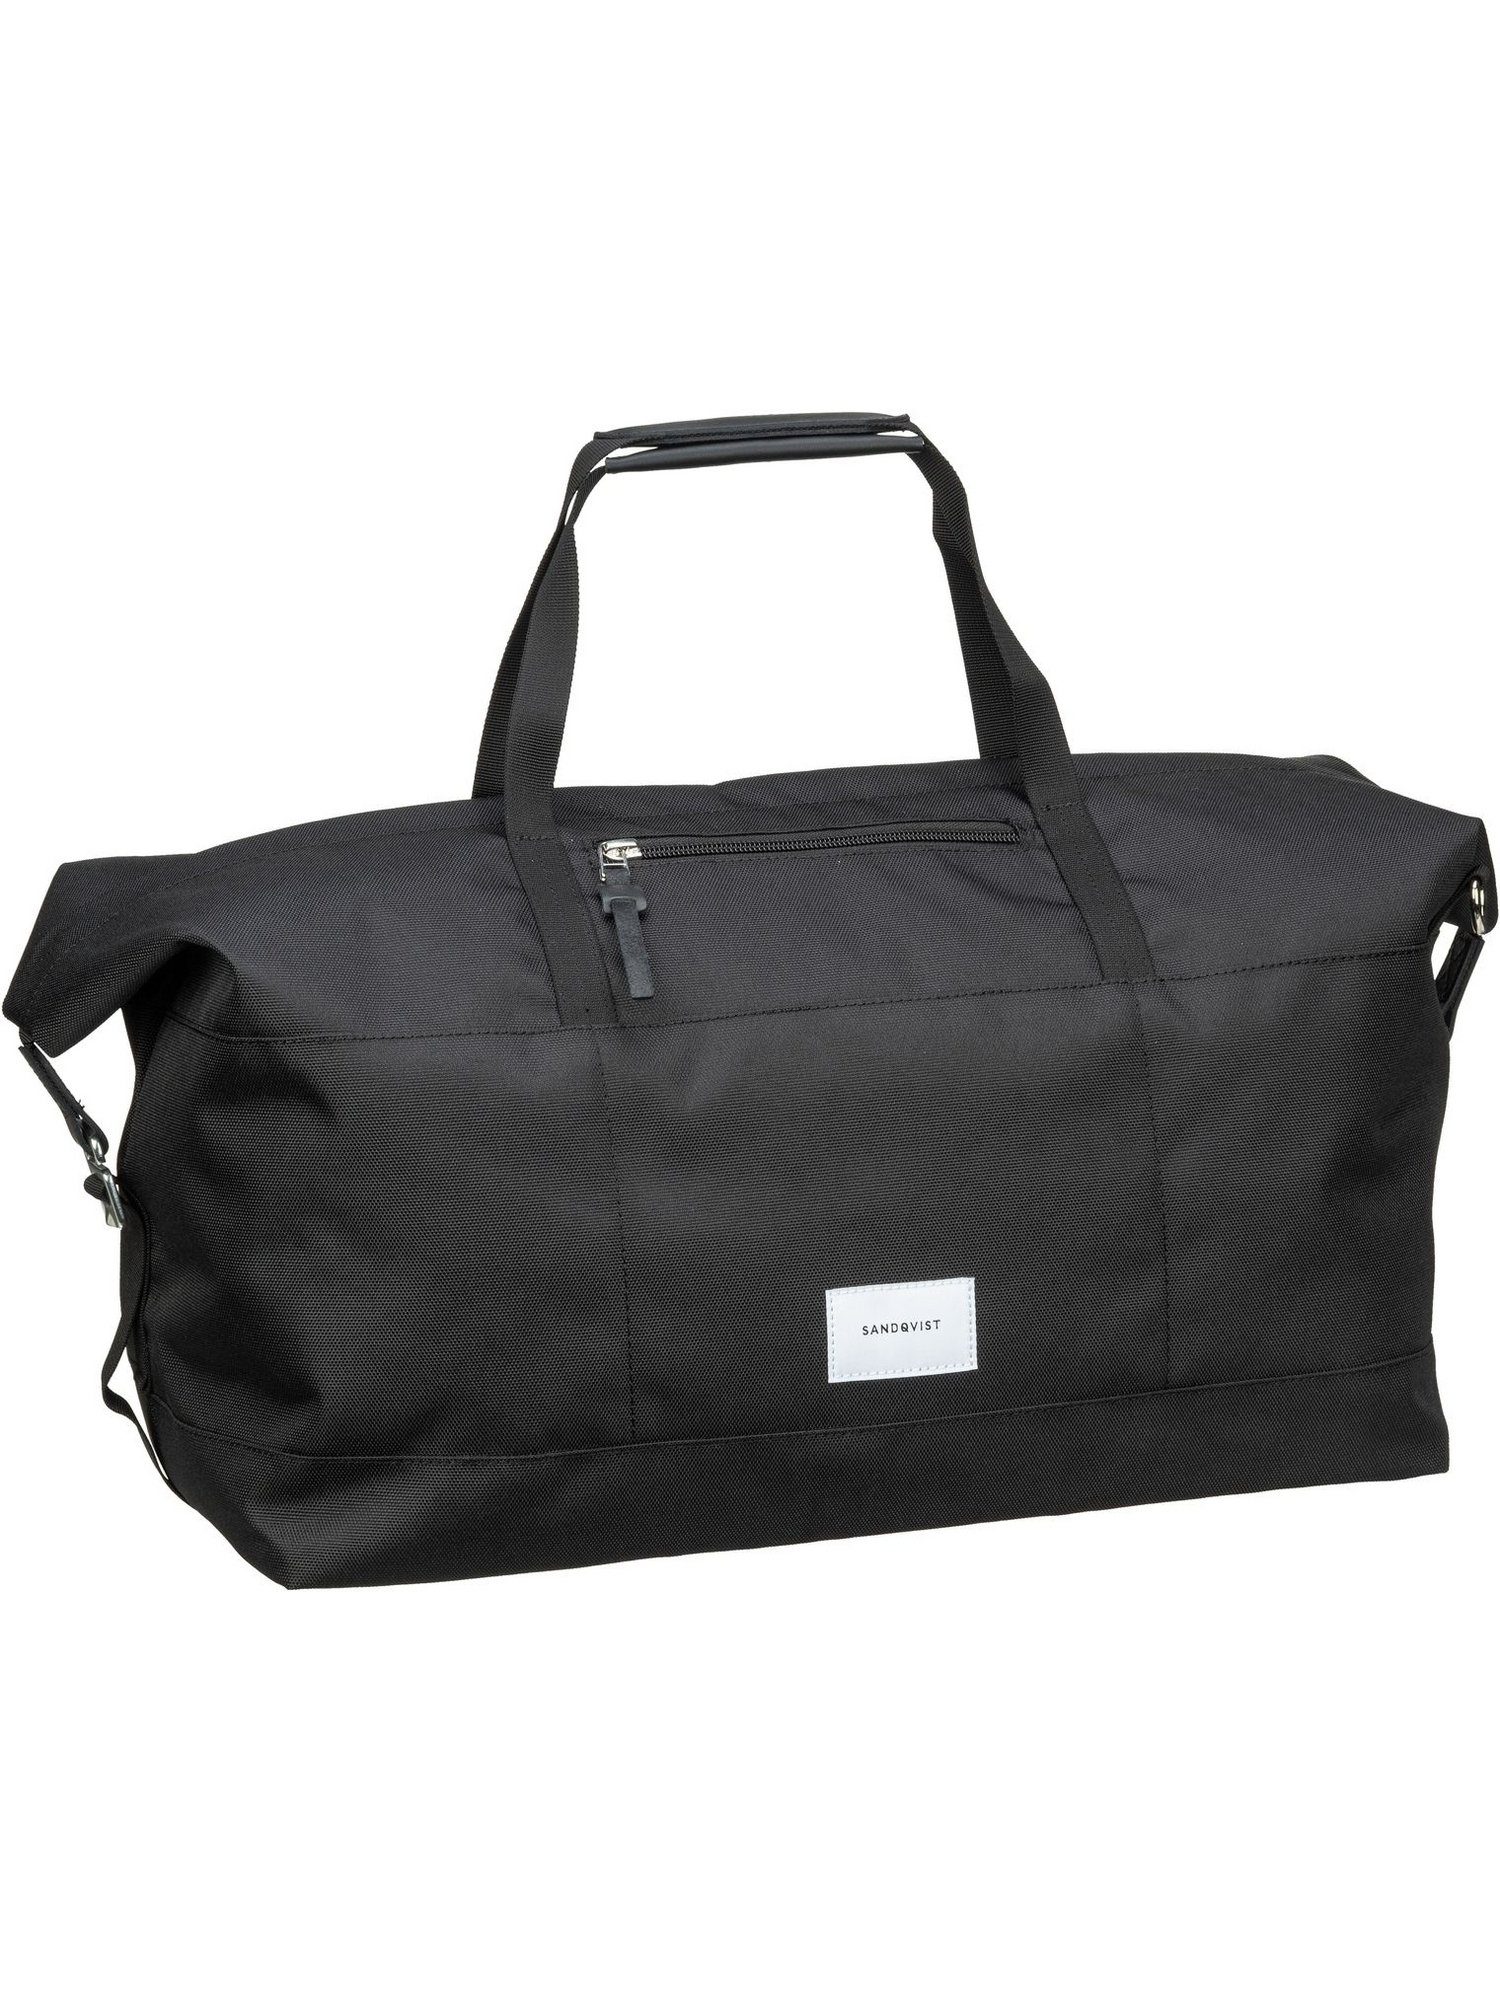 Sandqvist Невеликі сумки для поїздок Milton Невеликі сумки для поїздок Bag